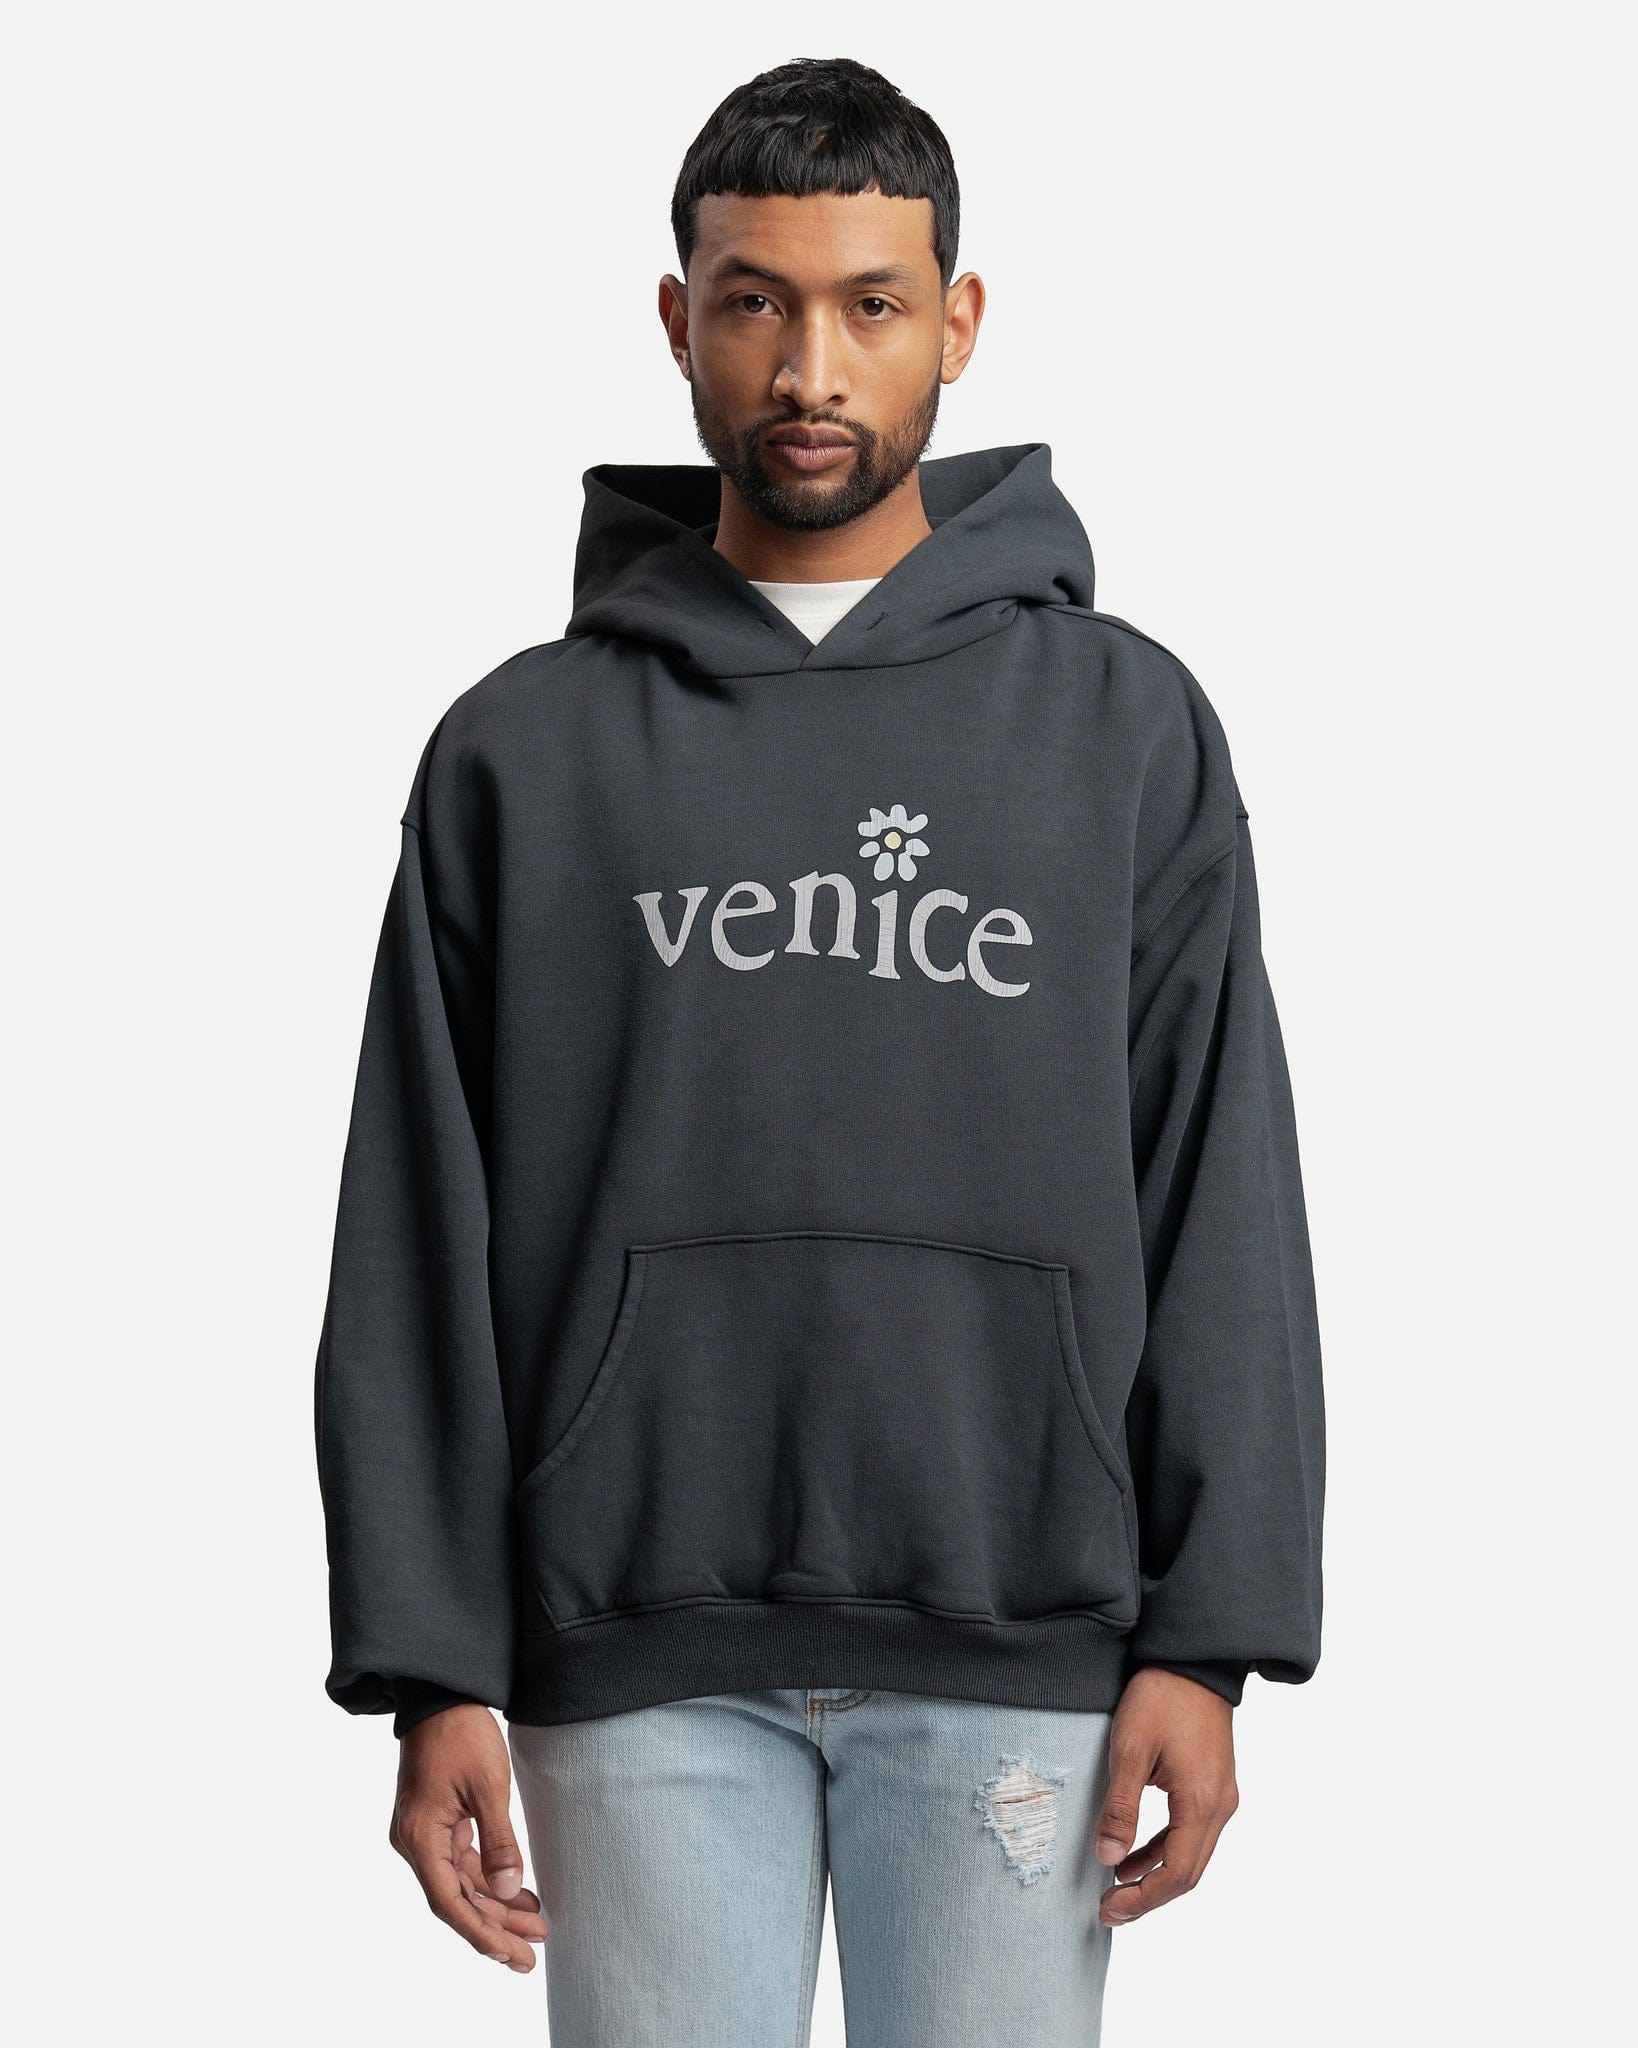 Venice Hoodie in Black